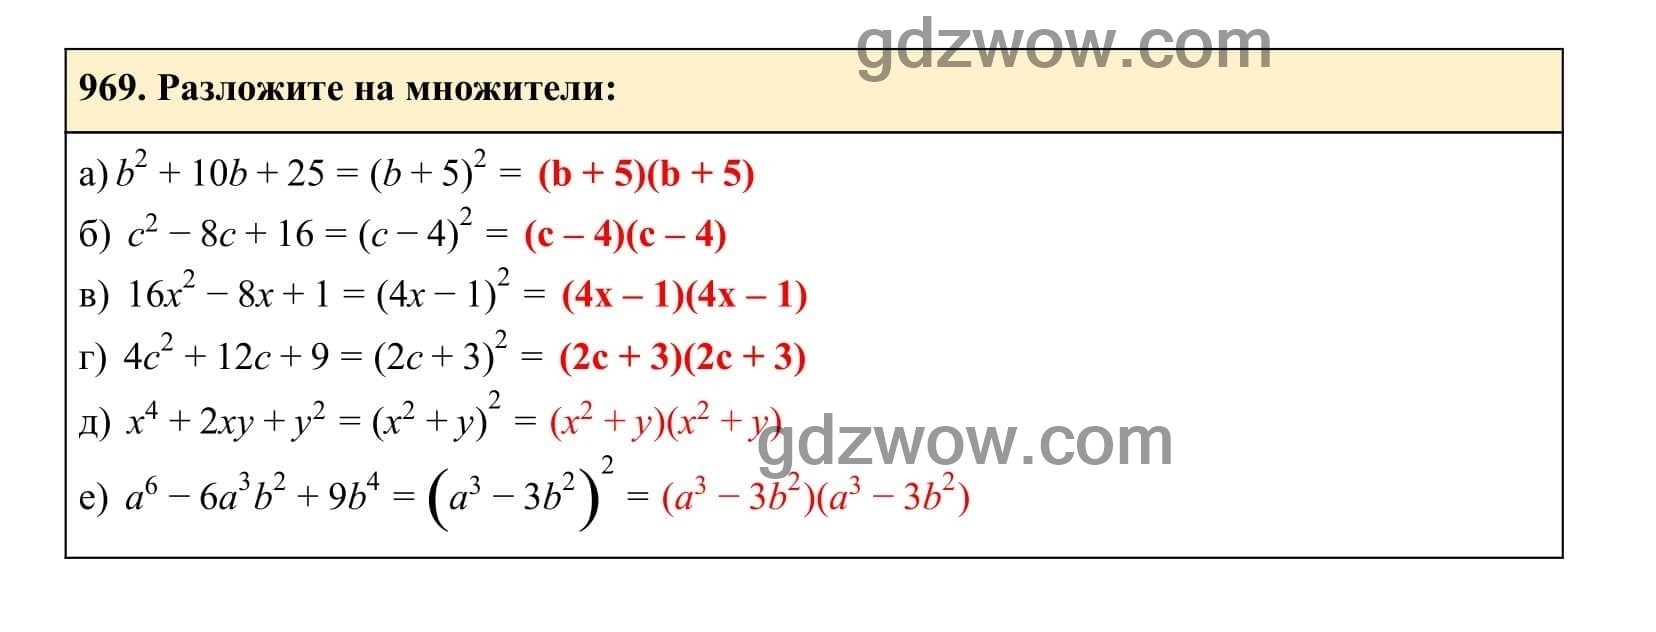 Упражнение 969 - ГДЗ по Алгебре 7 класс Учебник Макарычев (решебник) - GDZwow